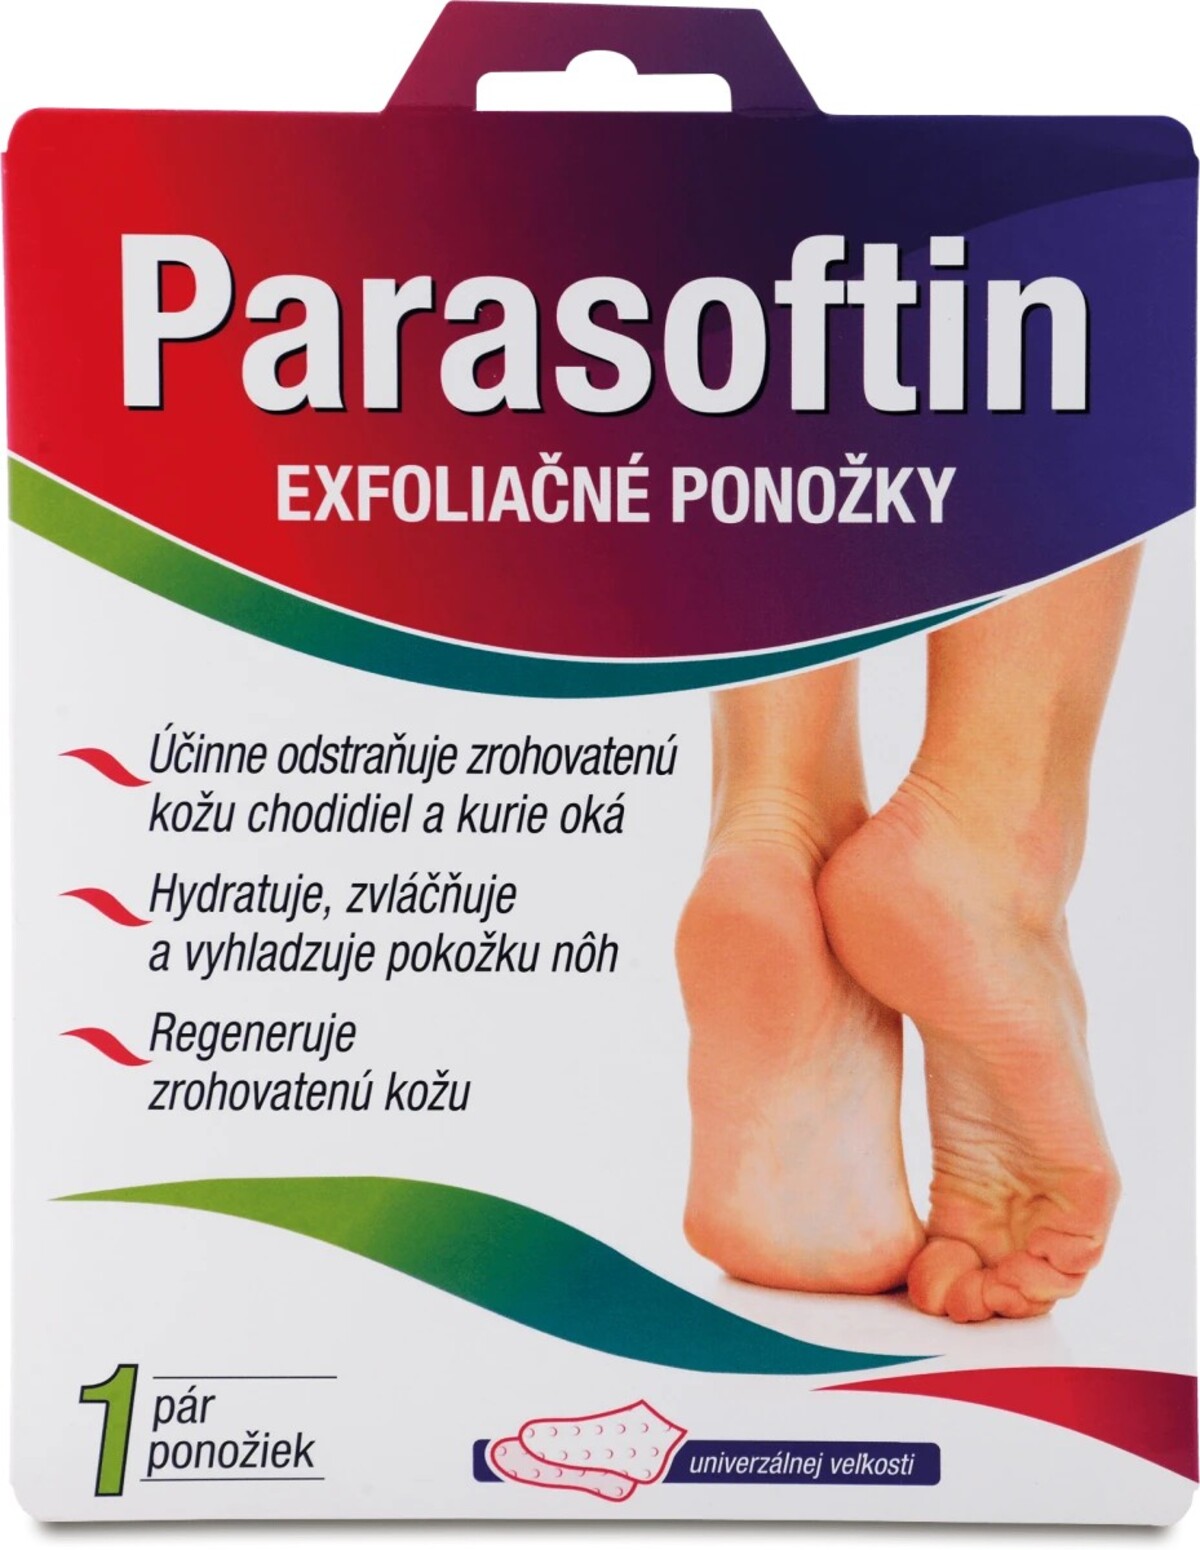 Exfoliačné návleky Parasoftin, 7,45 €/1 pár. Obsahuje komplex extraktov (extrakt z medu a extrakty z rastlín: opuncia figová, hruška, marakuja, citrón, grapefruit a ananás), ureu, alantoín a AHA/BHA kyseliny. Kúpiš v drogérii aj online.